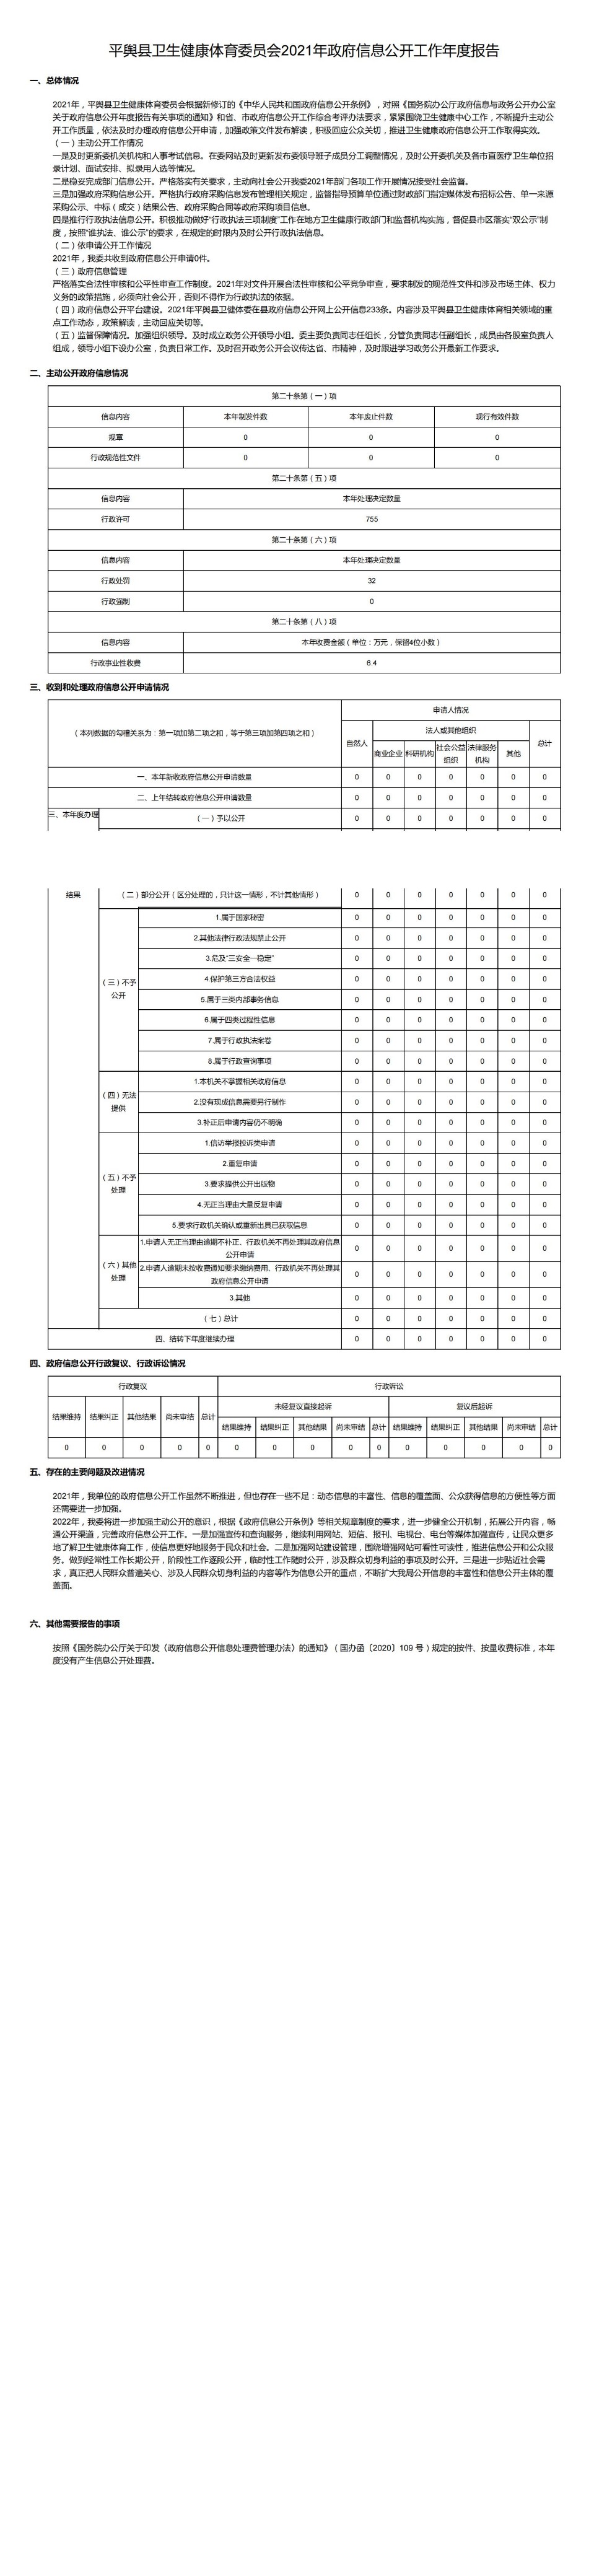 平舆县卫生健康体育委员会2021年政府信息公开工作年度报告_00.jpg